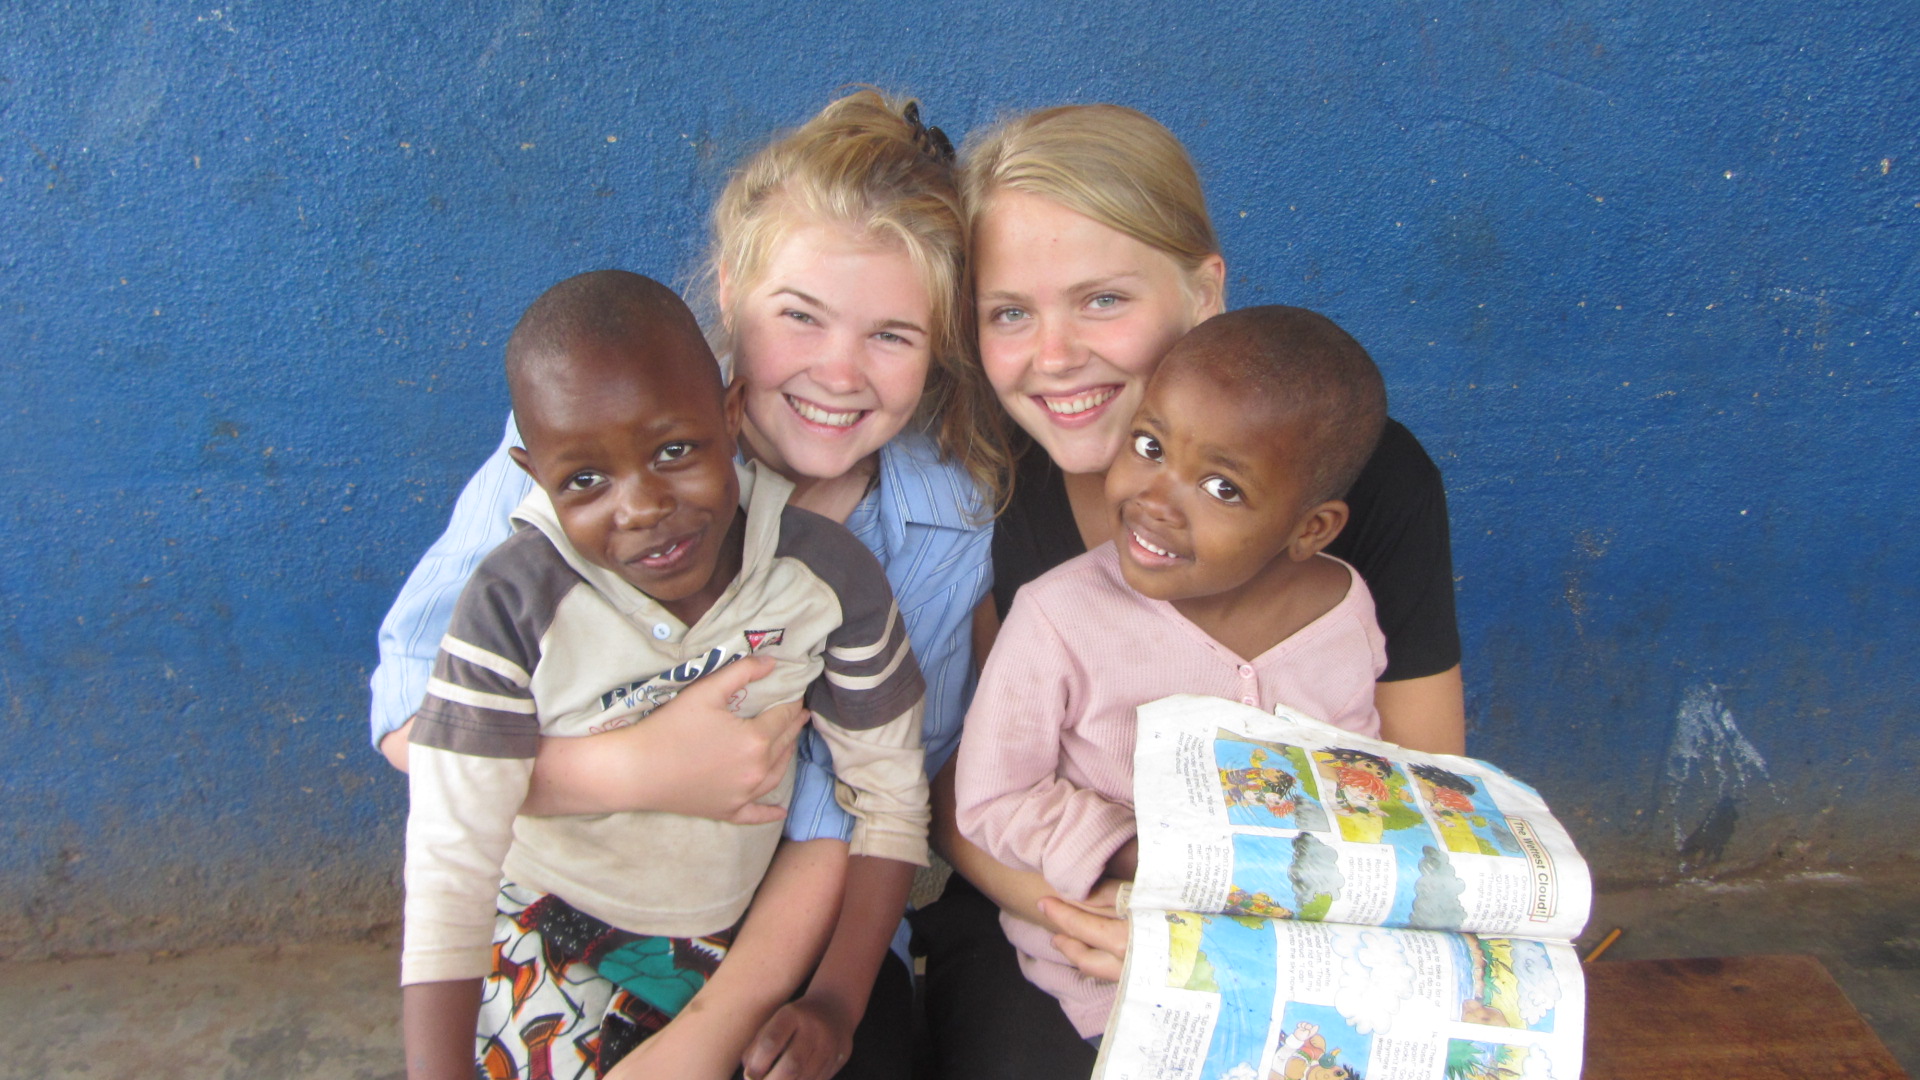 volunteer in Africa